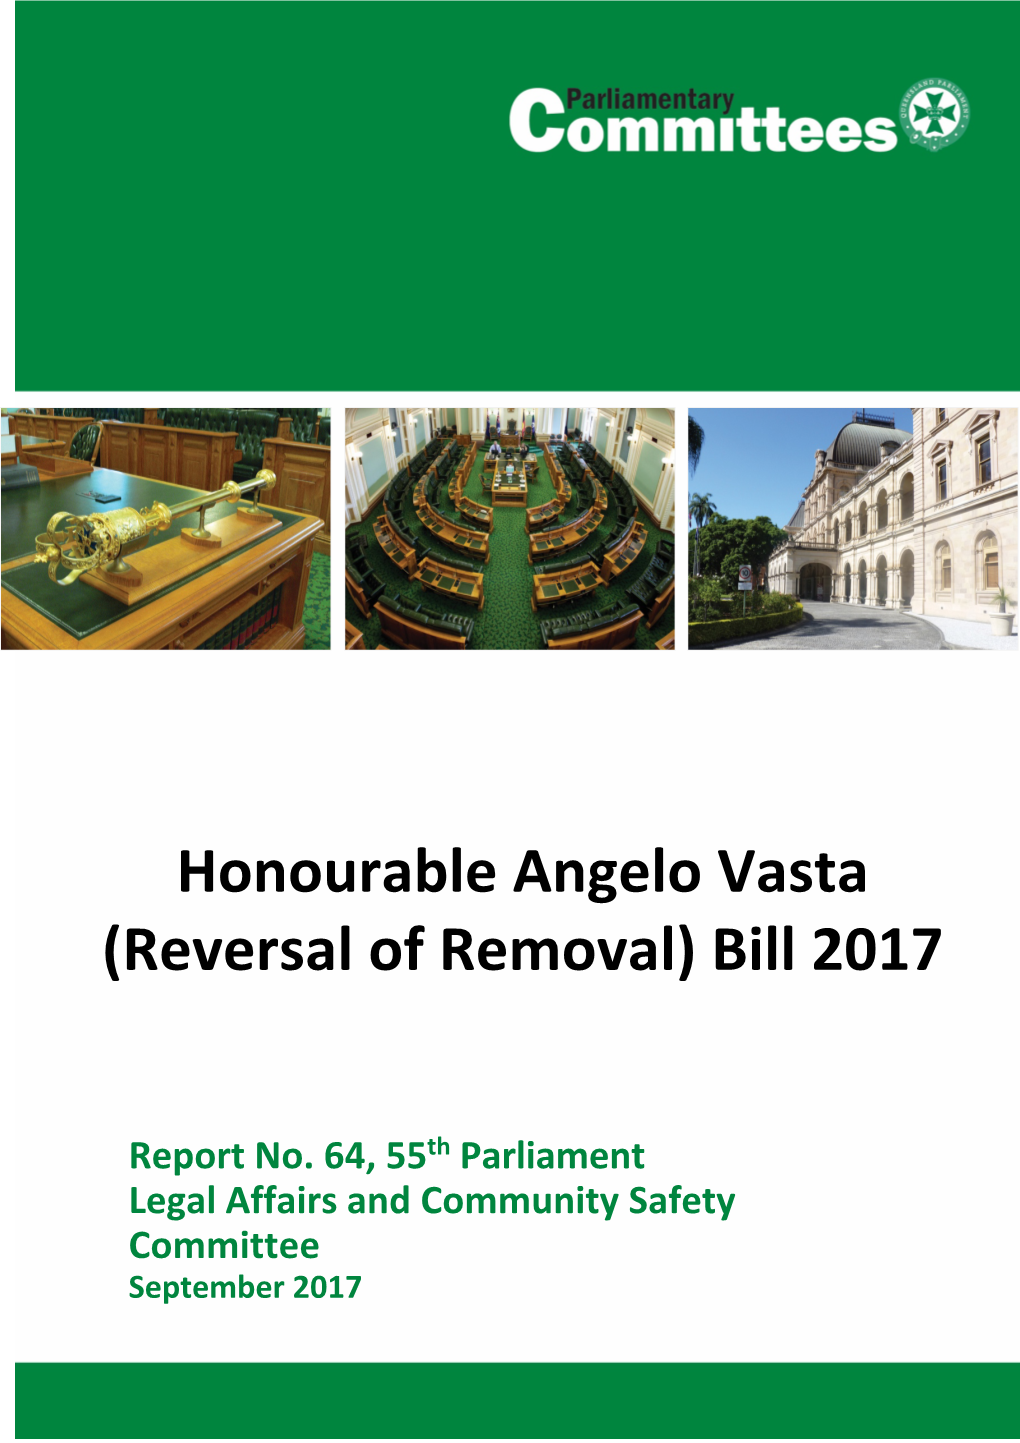 Honourable Angelo Vasta (Reversal of Removal) Bill 2017